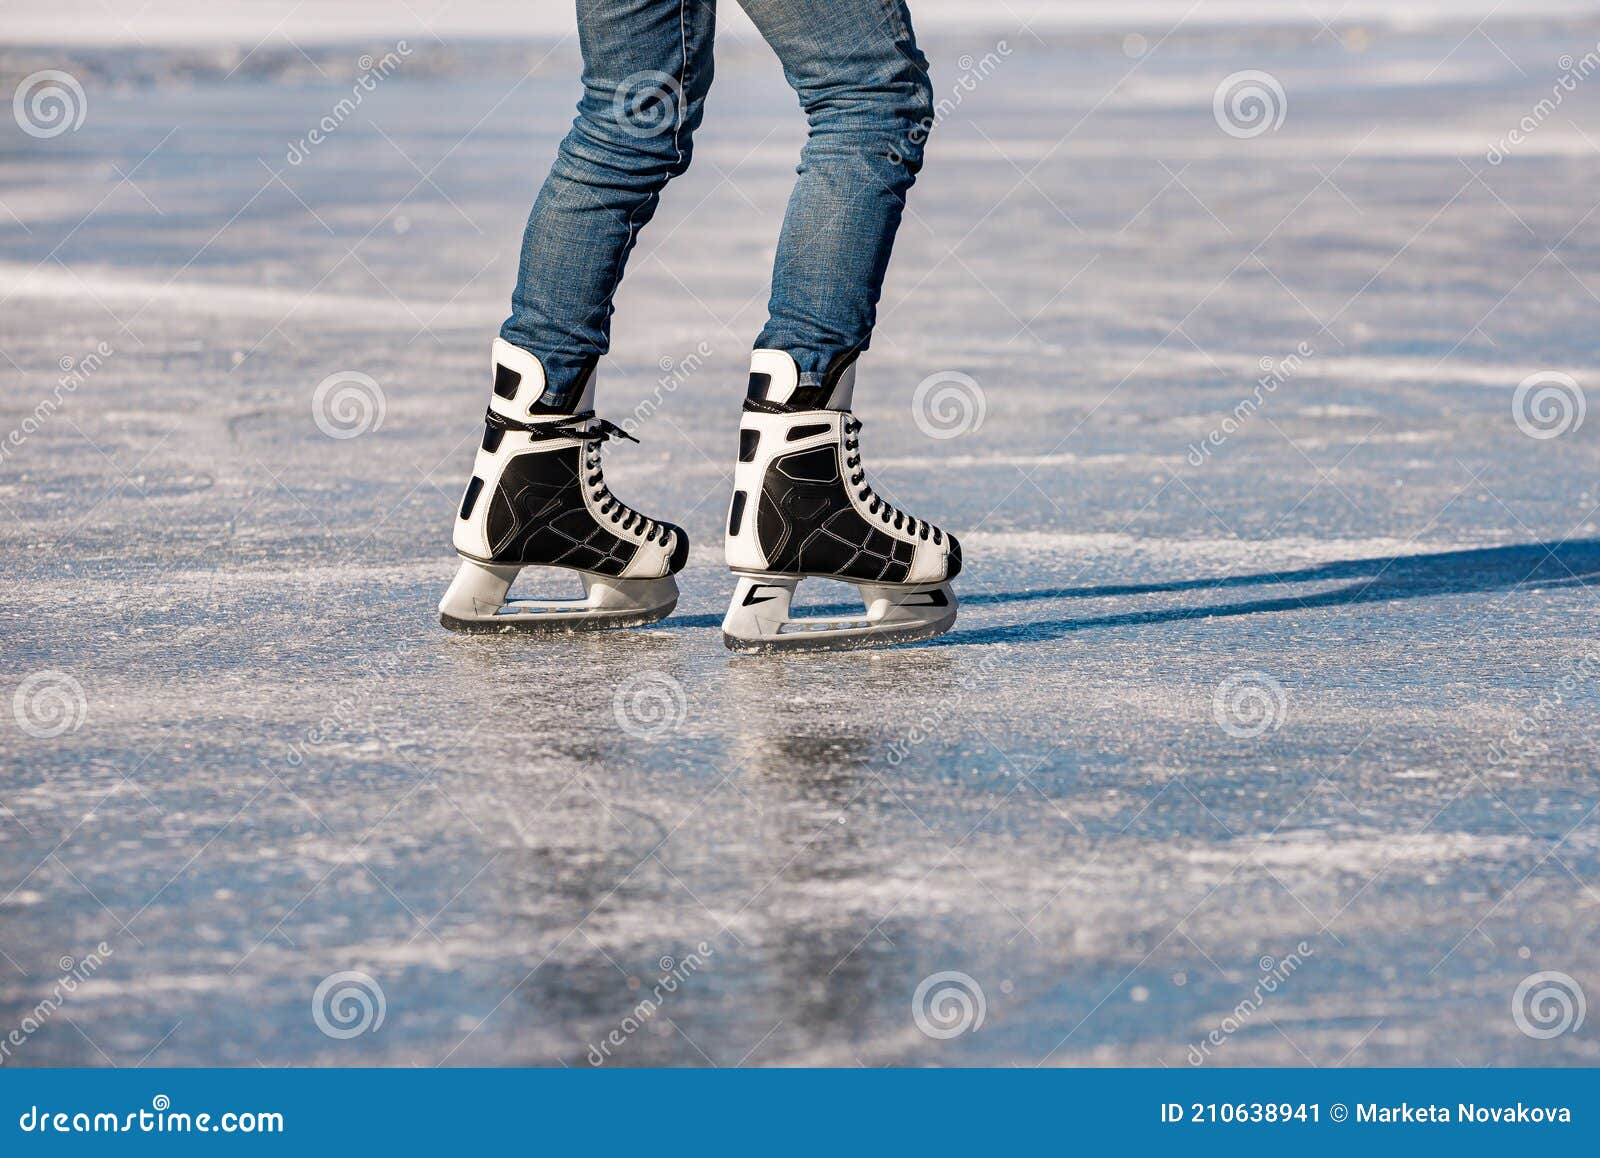 https://thumbs.dreamstime.com/z/detail-black-white-mens-ice-skates-action-ice-detail-black-white-mens-ice-skates-action-ice-210638941.jpg